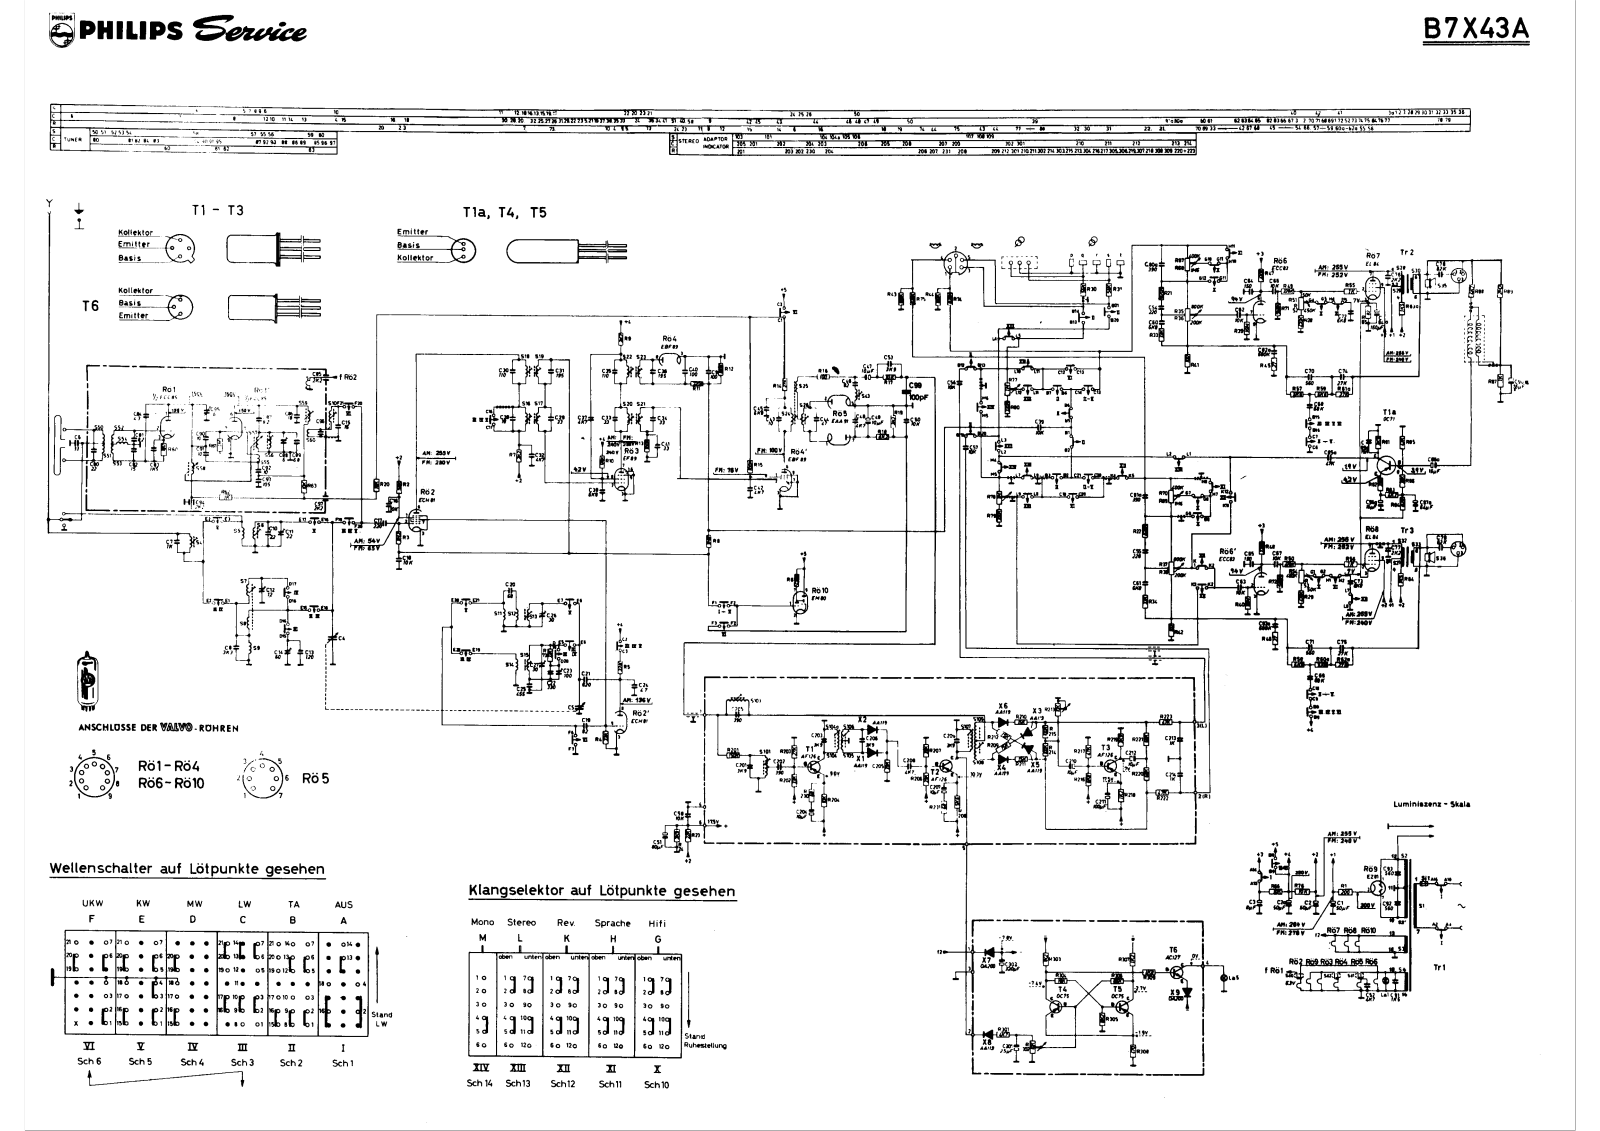 Philips b7x43 schematic